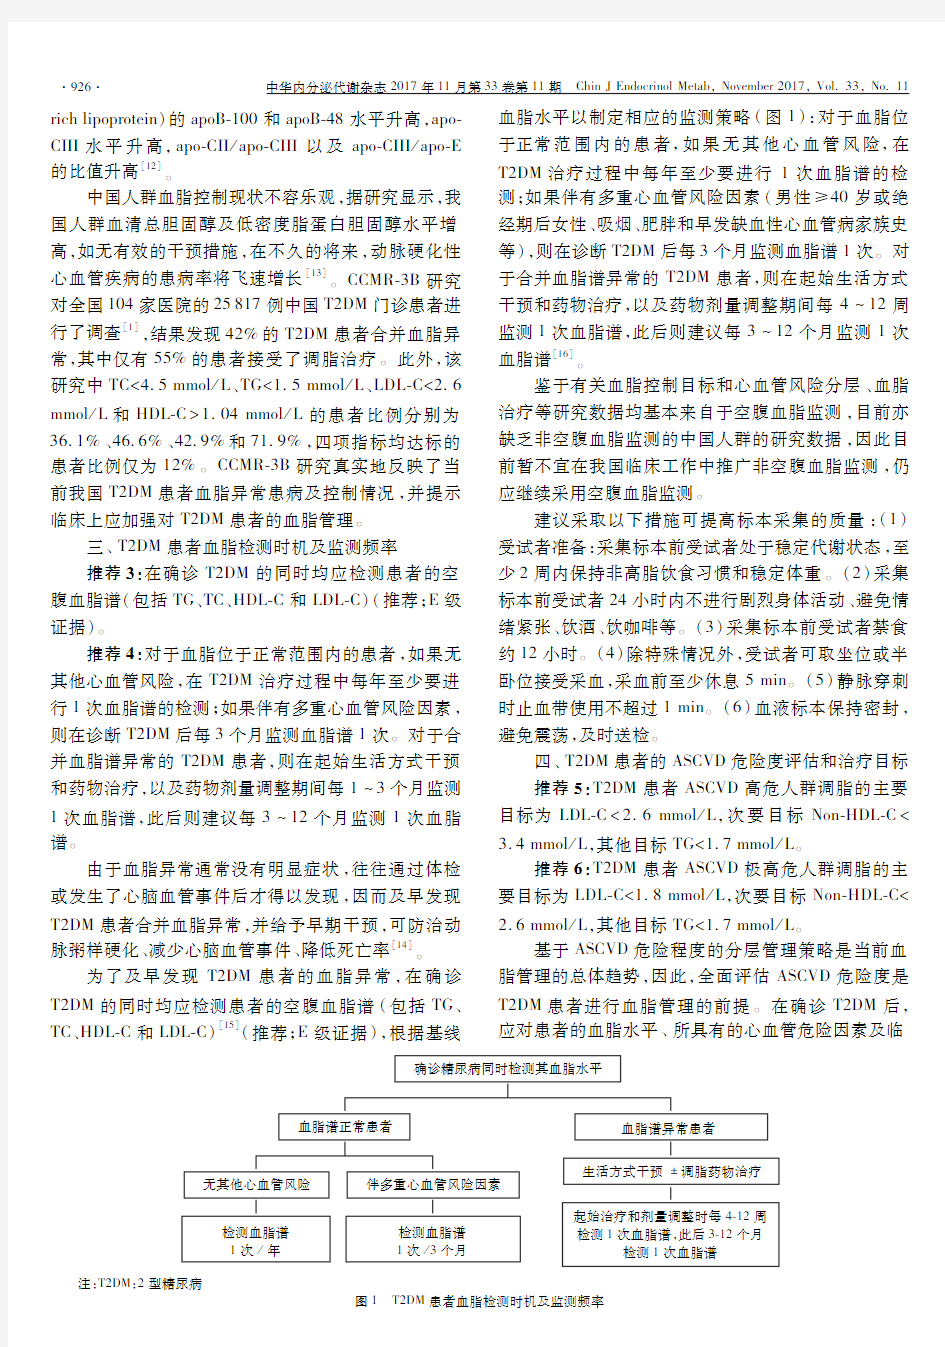 中国2型糖尿病合并血脂异常防治专家共识(2017年修订版)